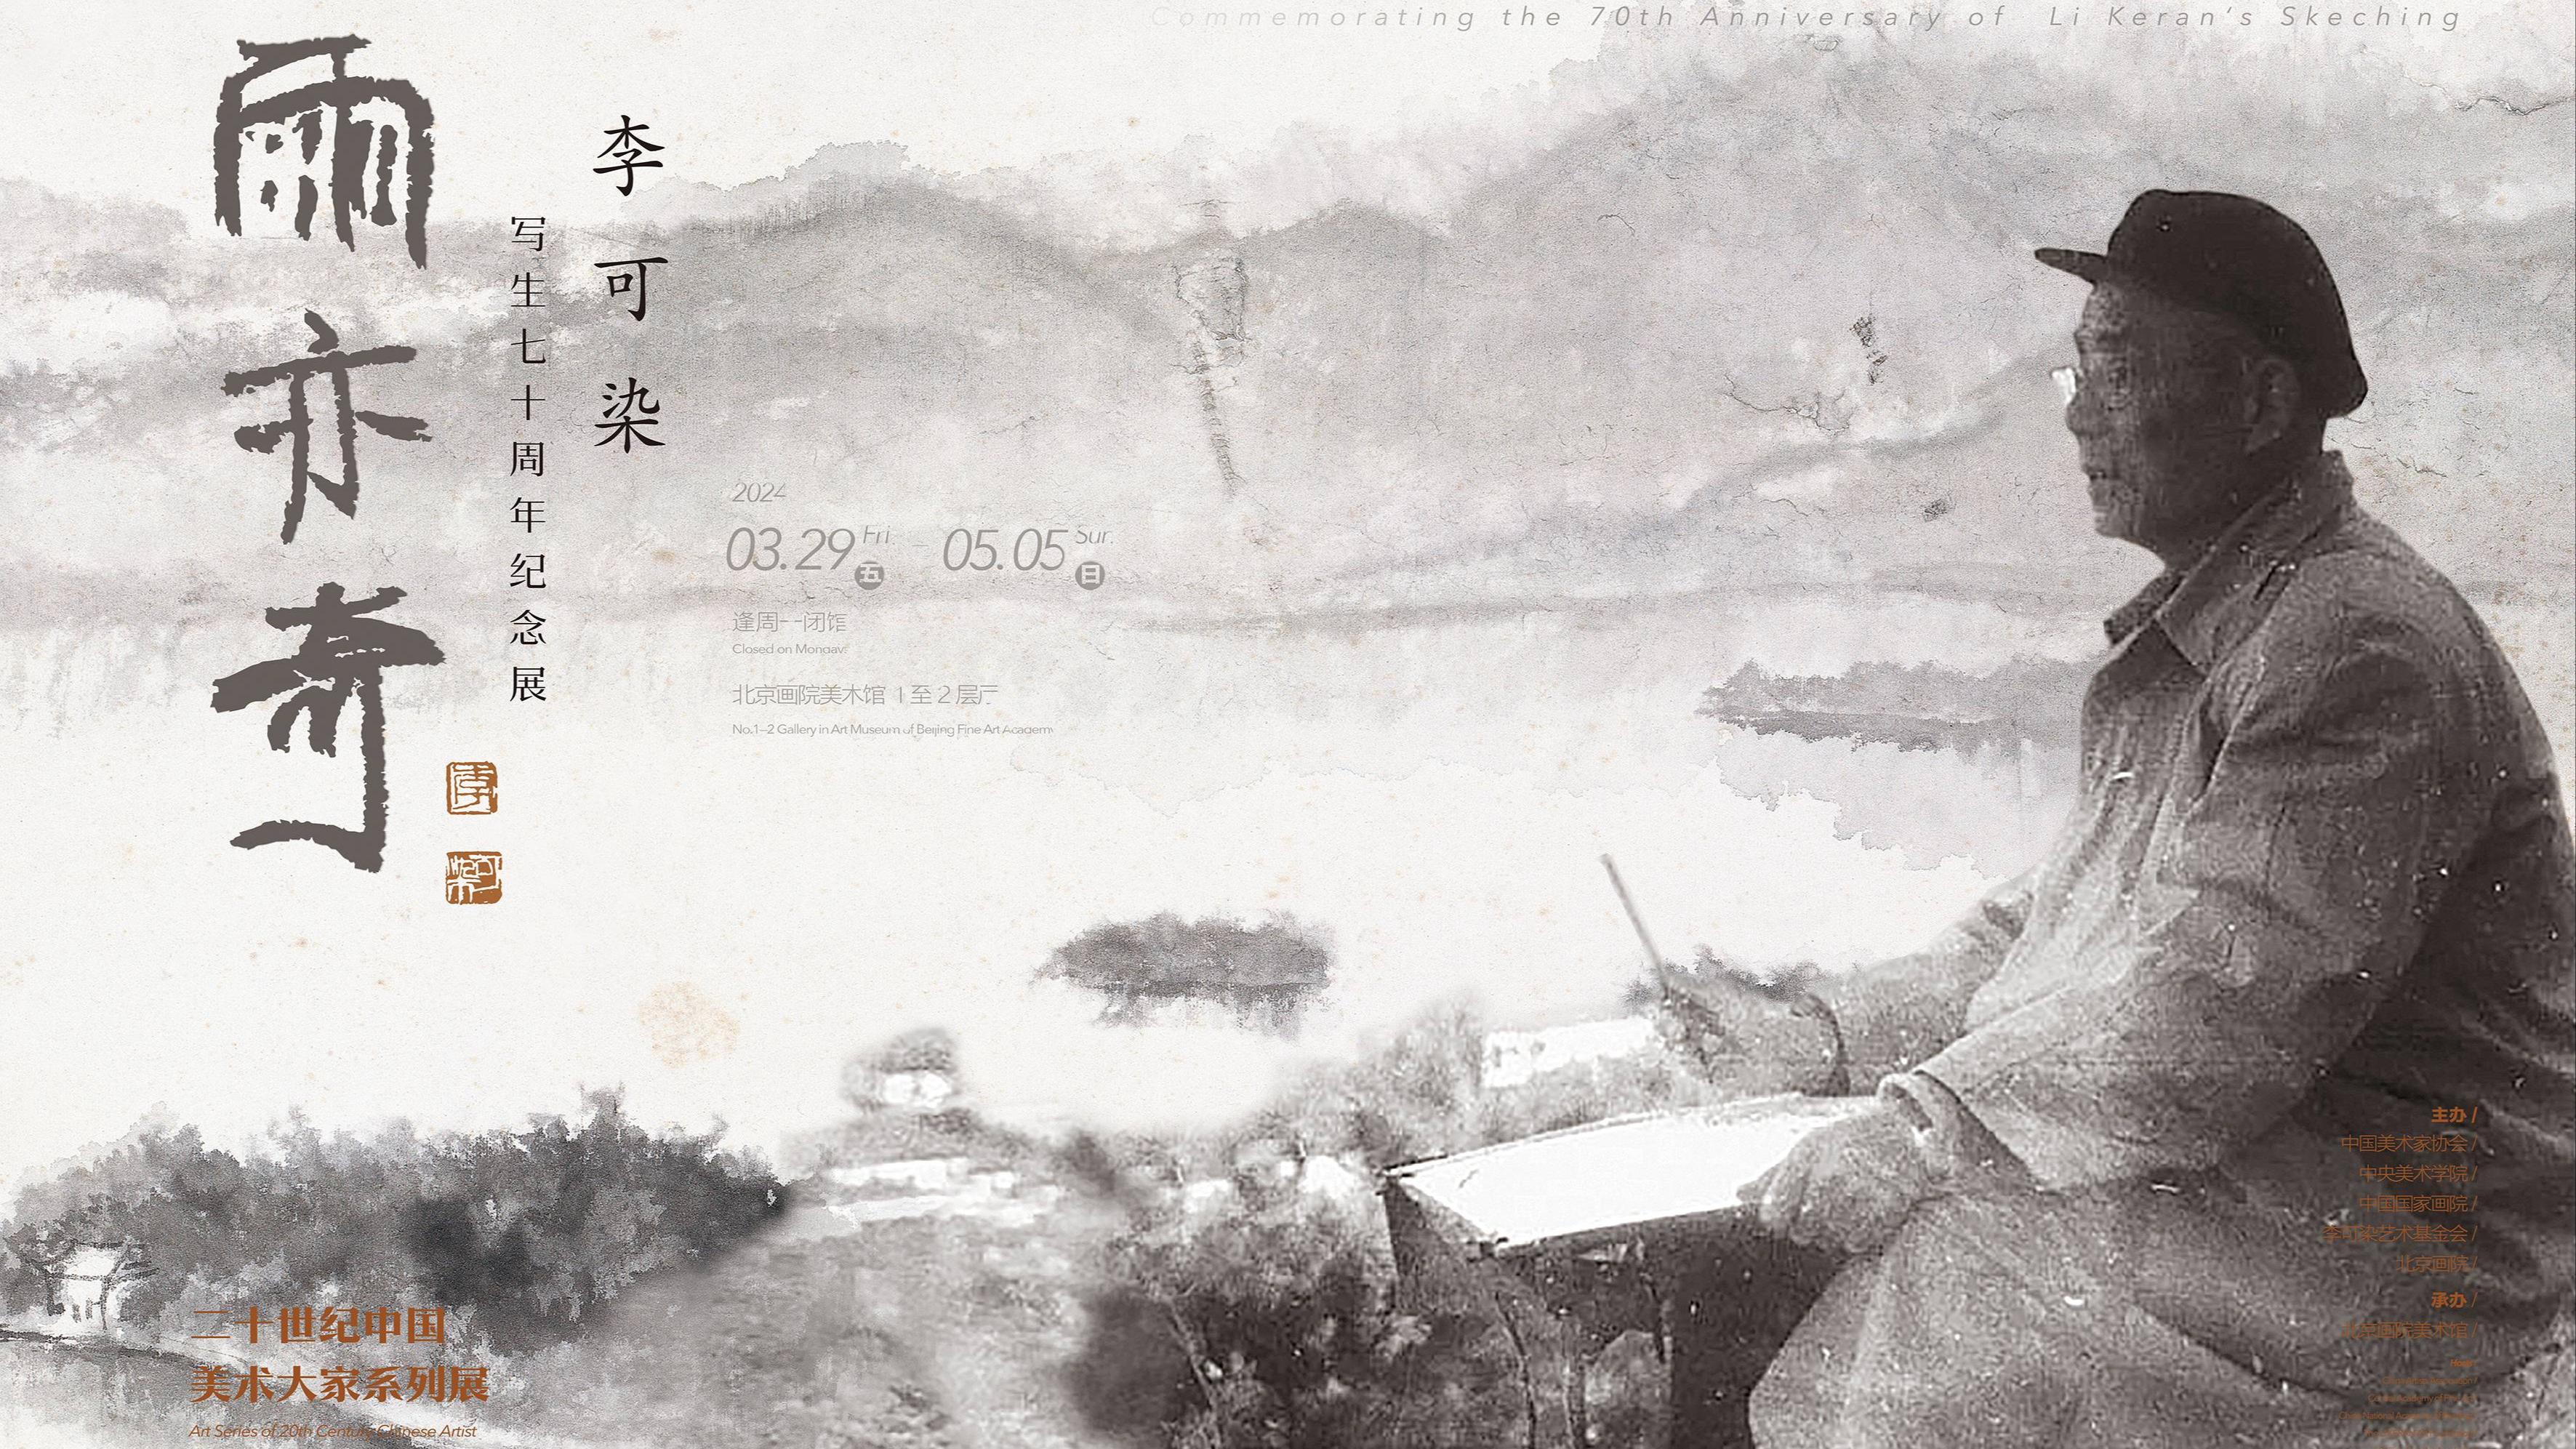 “李可染写生七十周年纪念展”在北京画院美术馆开幕